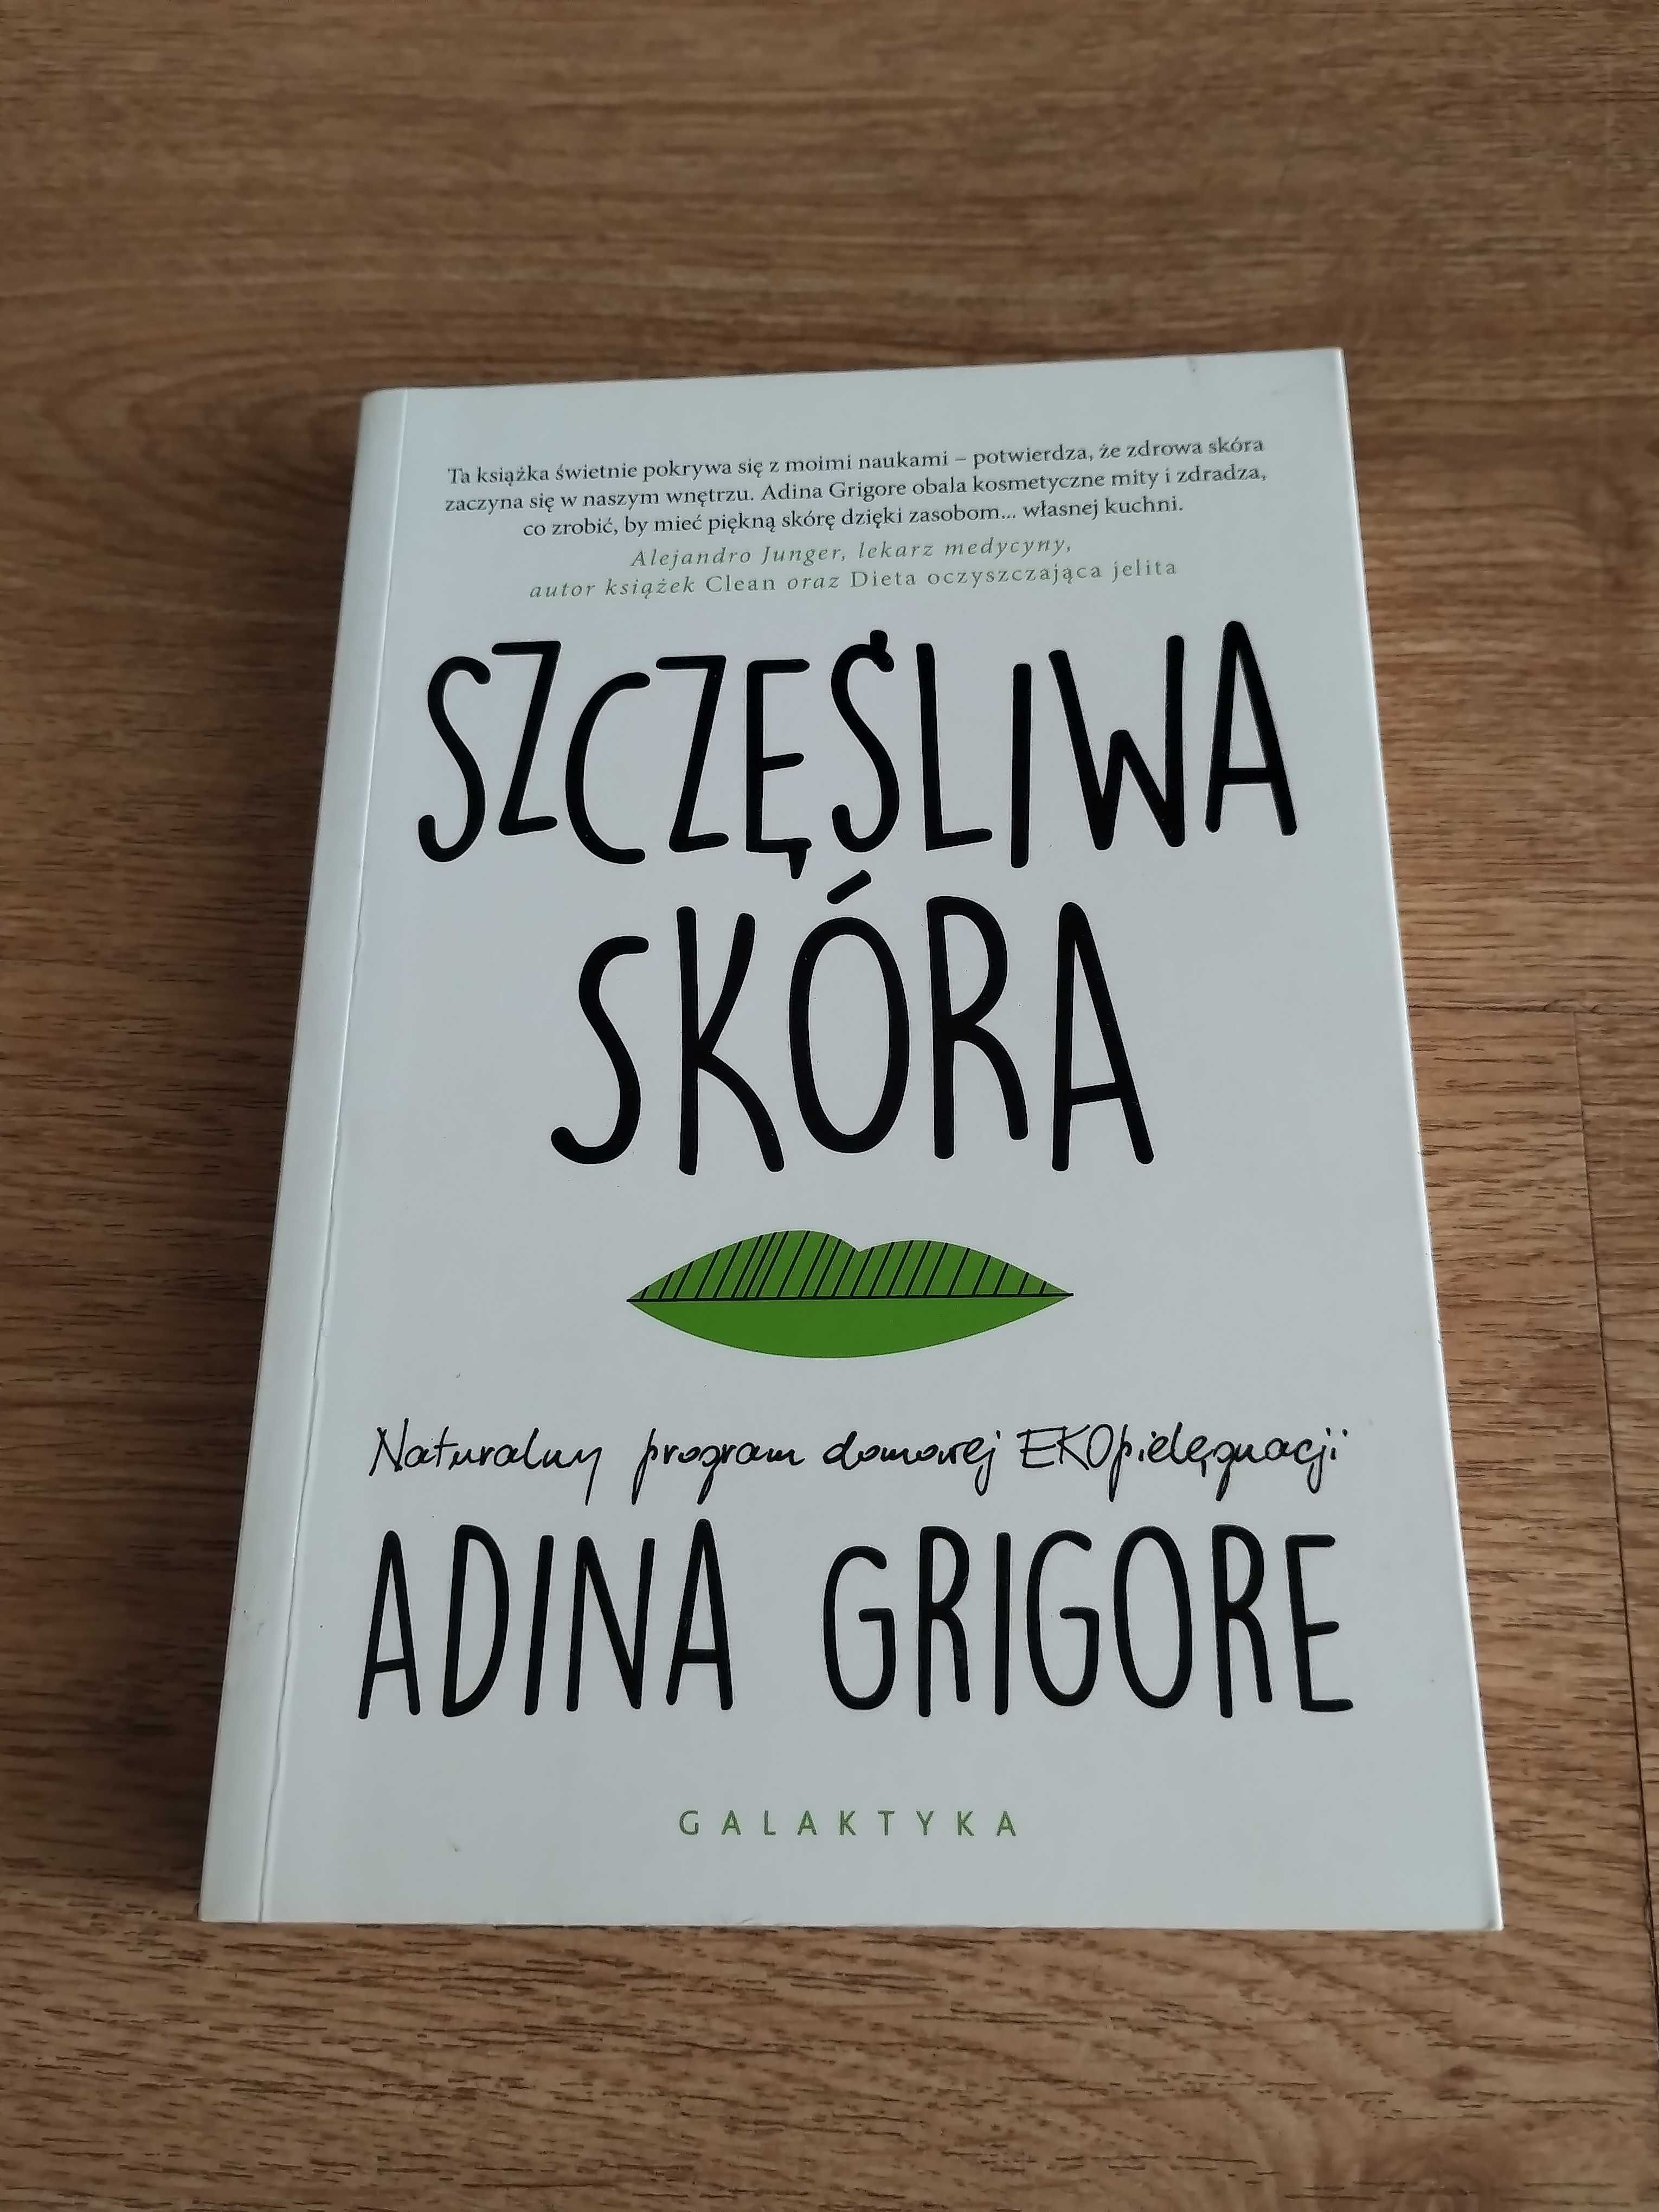 Szczęśliwa skóra - Adina Grigore | NOWA